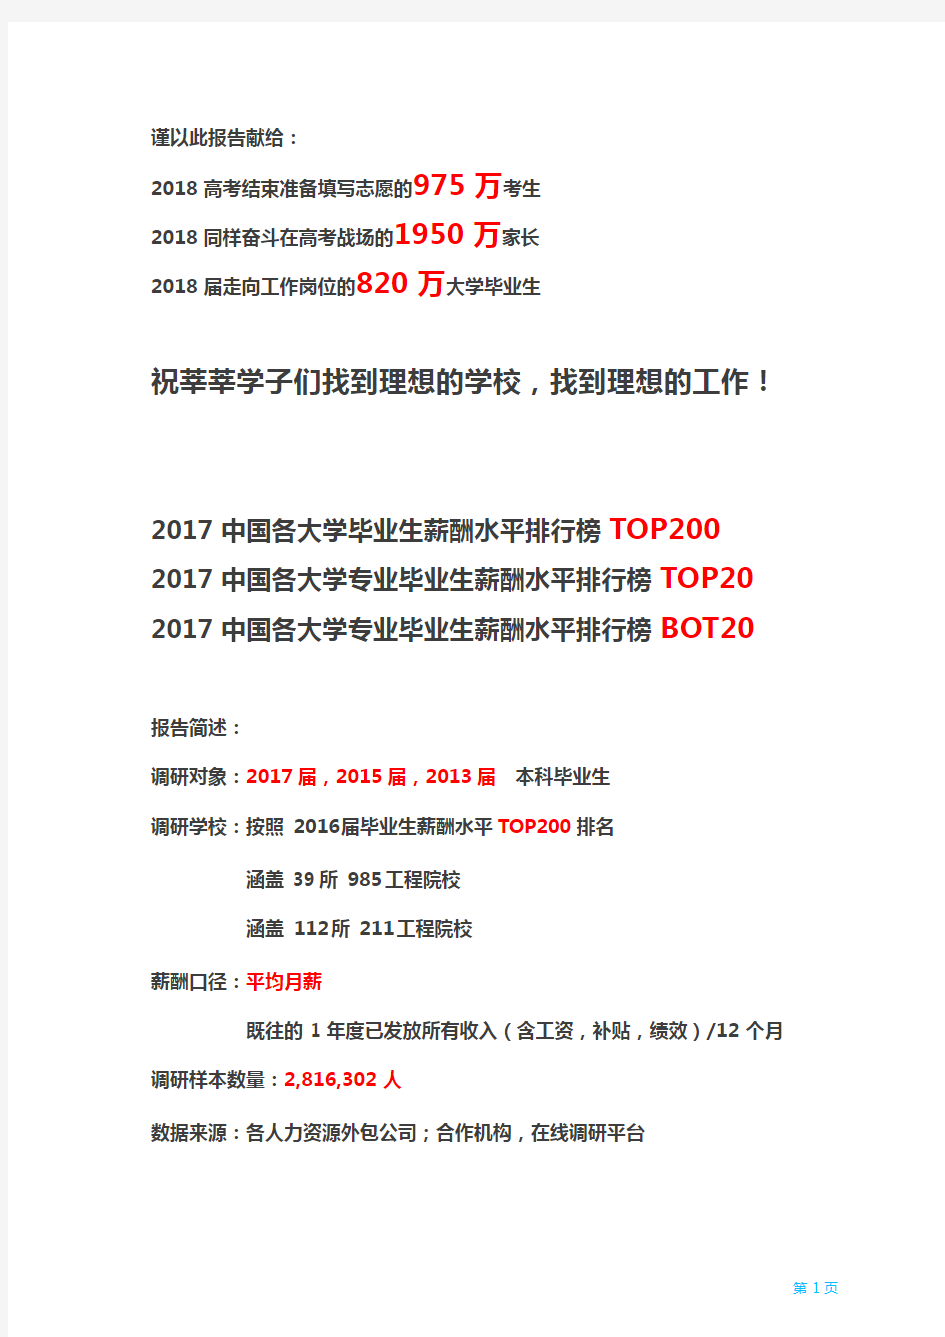 2018应届毕业生薪酬TOP200排行榜